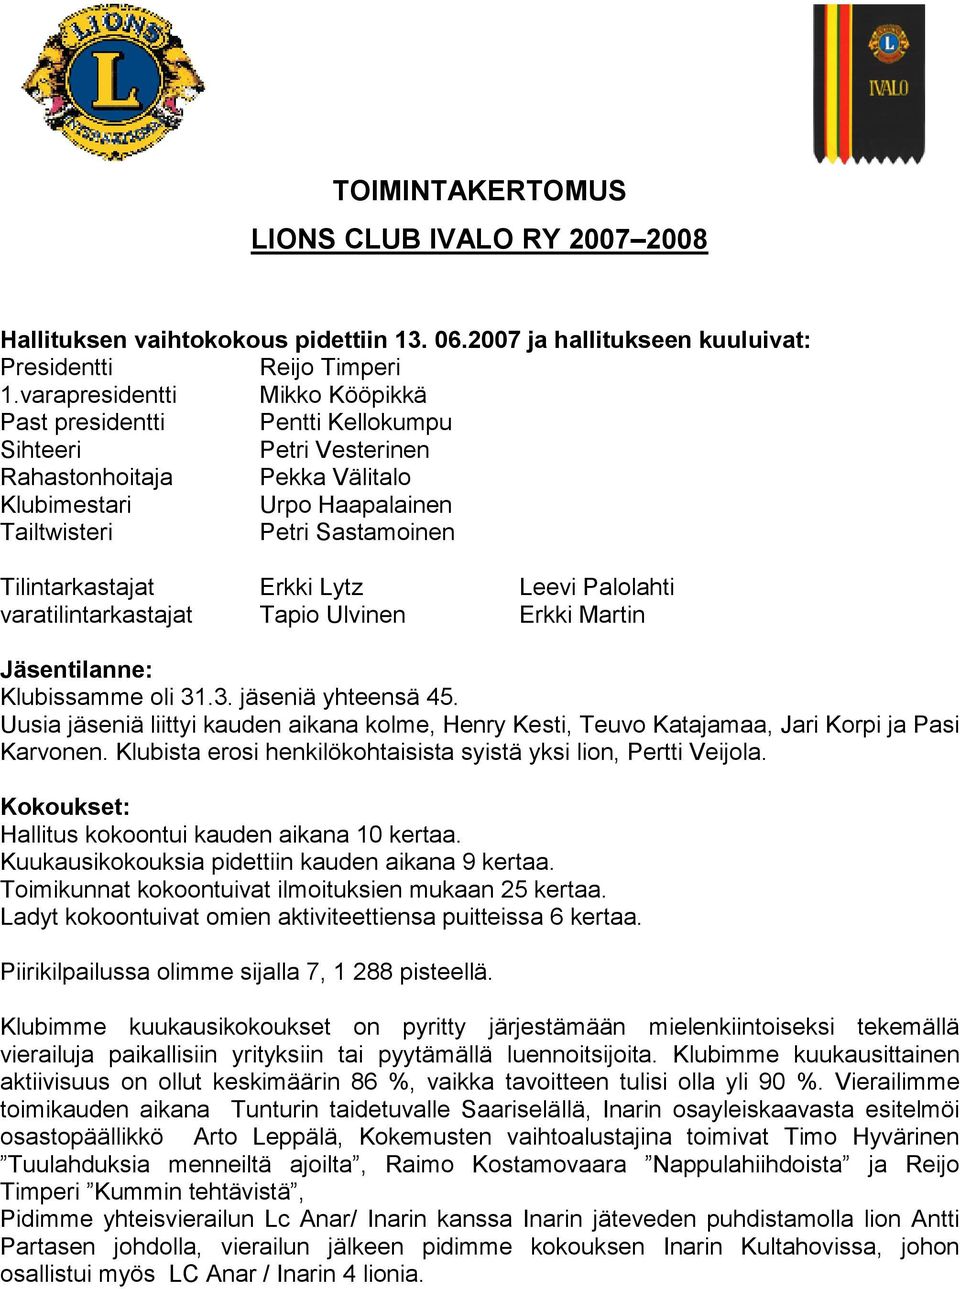 Tilintarkastajat Erkki Lytz Leevi Palolahti varatilintarkastajat Tapio Ulvinen Erkki Martin Jäsentilanne: Klubissamme oli 31.3. jäseniä yhteensä 45.